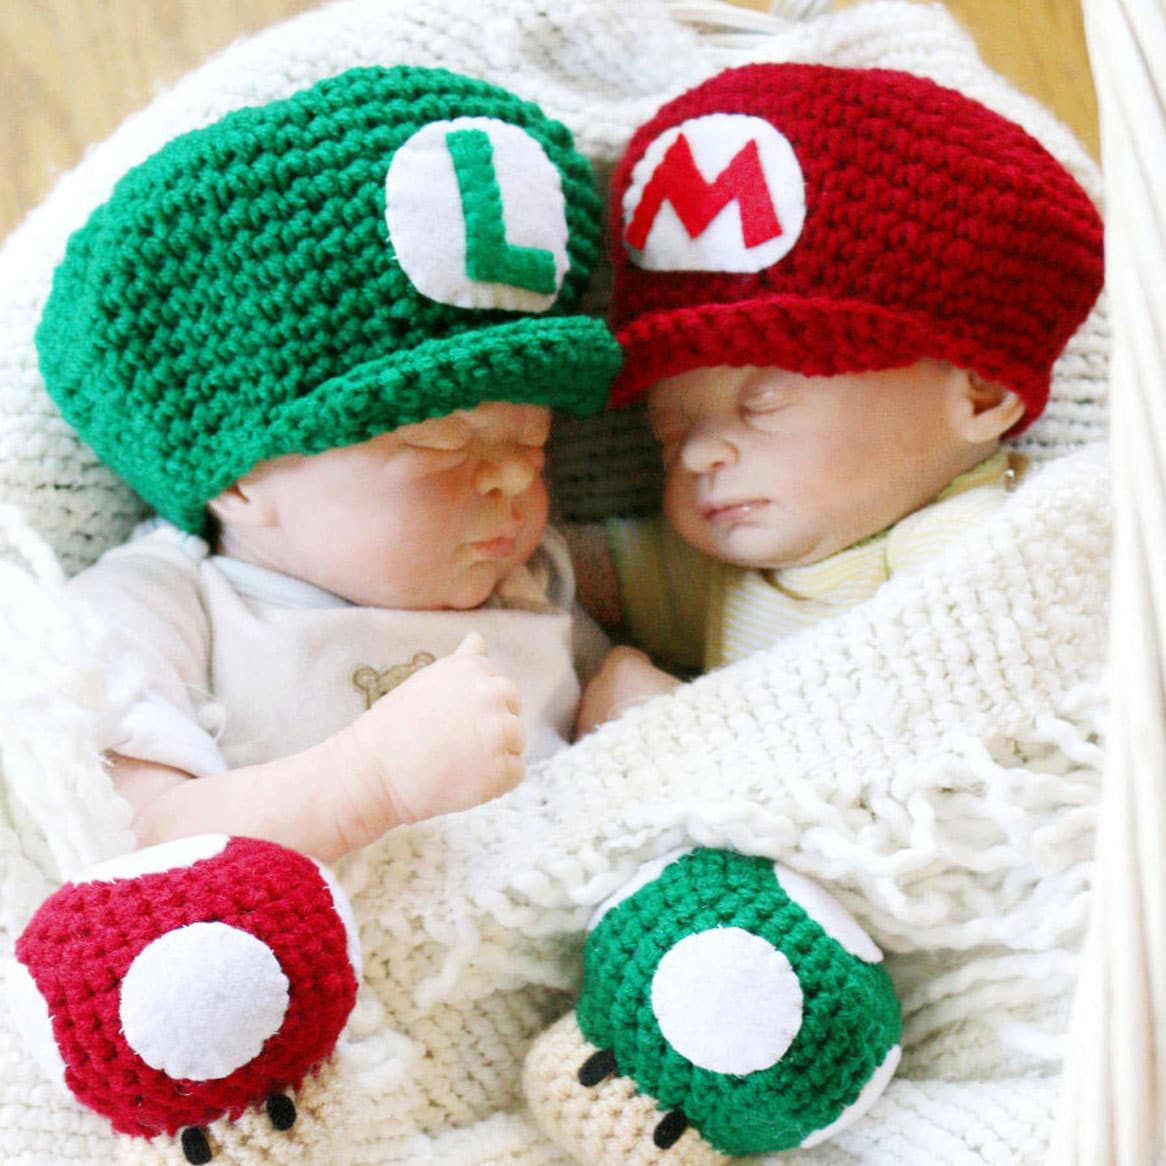 Newborn Crochet Mario Bros Hats & Mushrooms Shut Up And Take My Yen : Anime & Gaming Merchandise